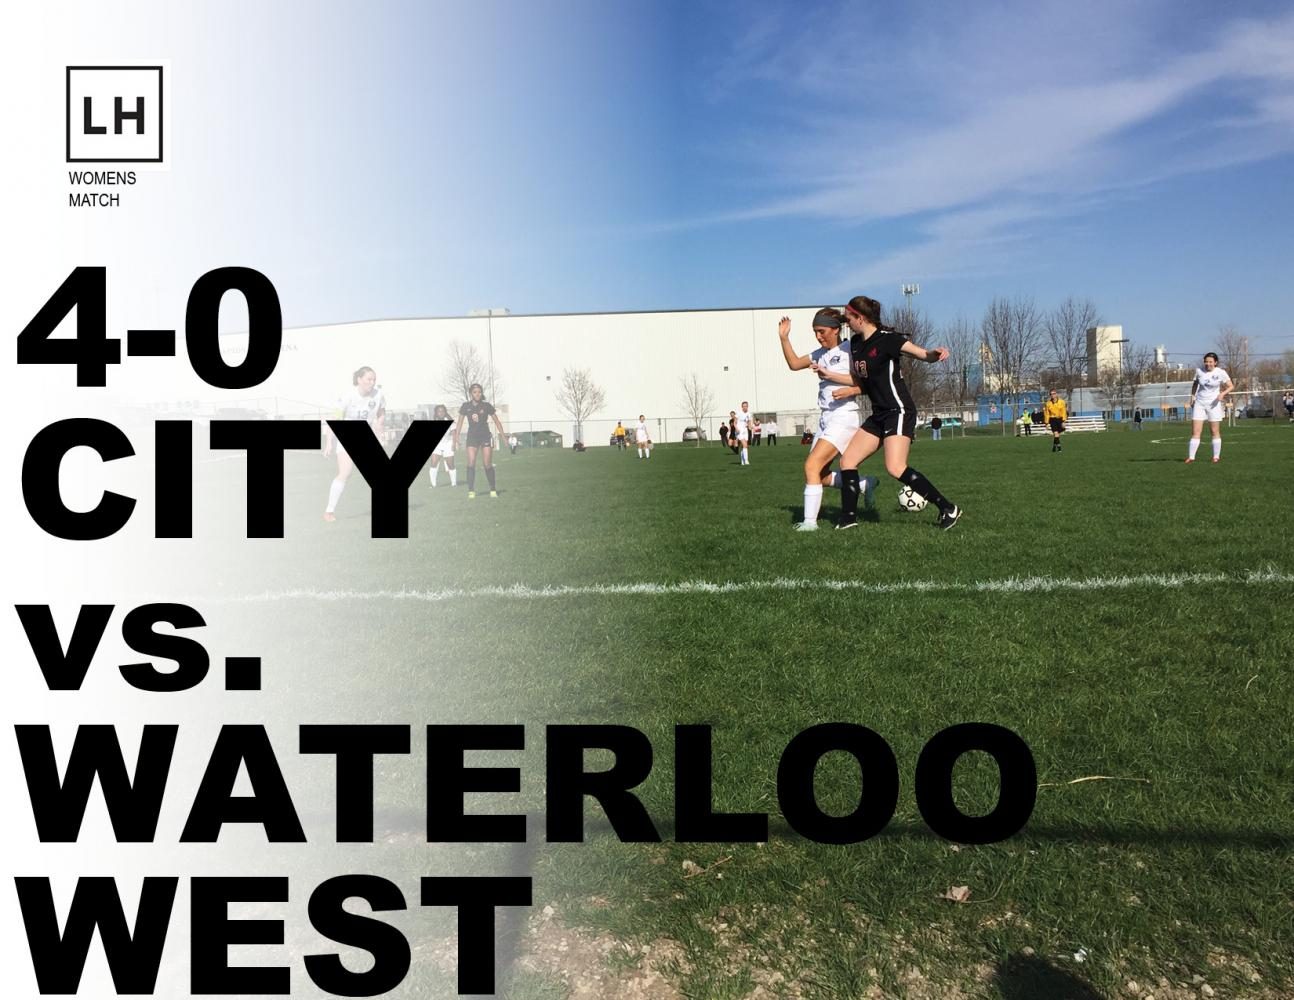 Waterloo+West+Falls+4-0+to+Little+Hawks